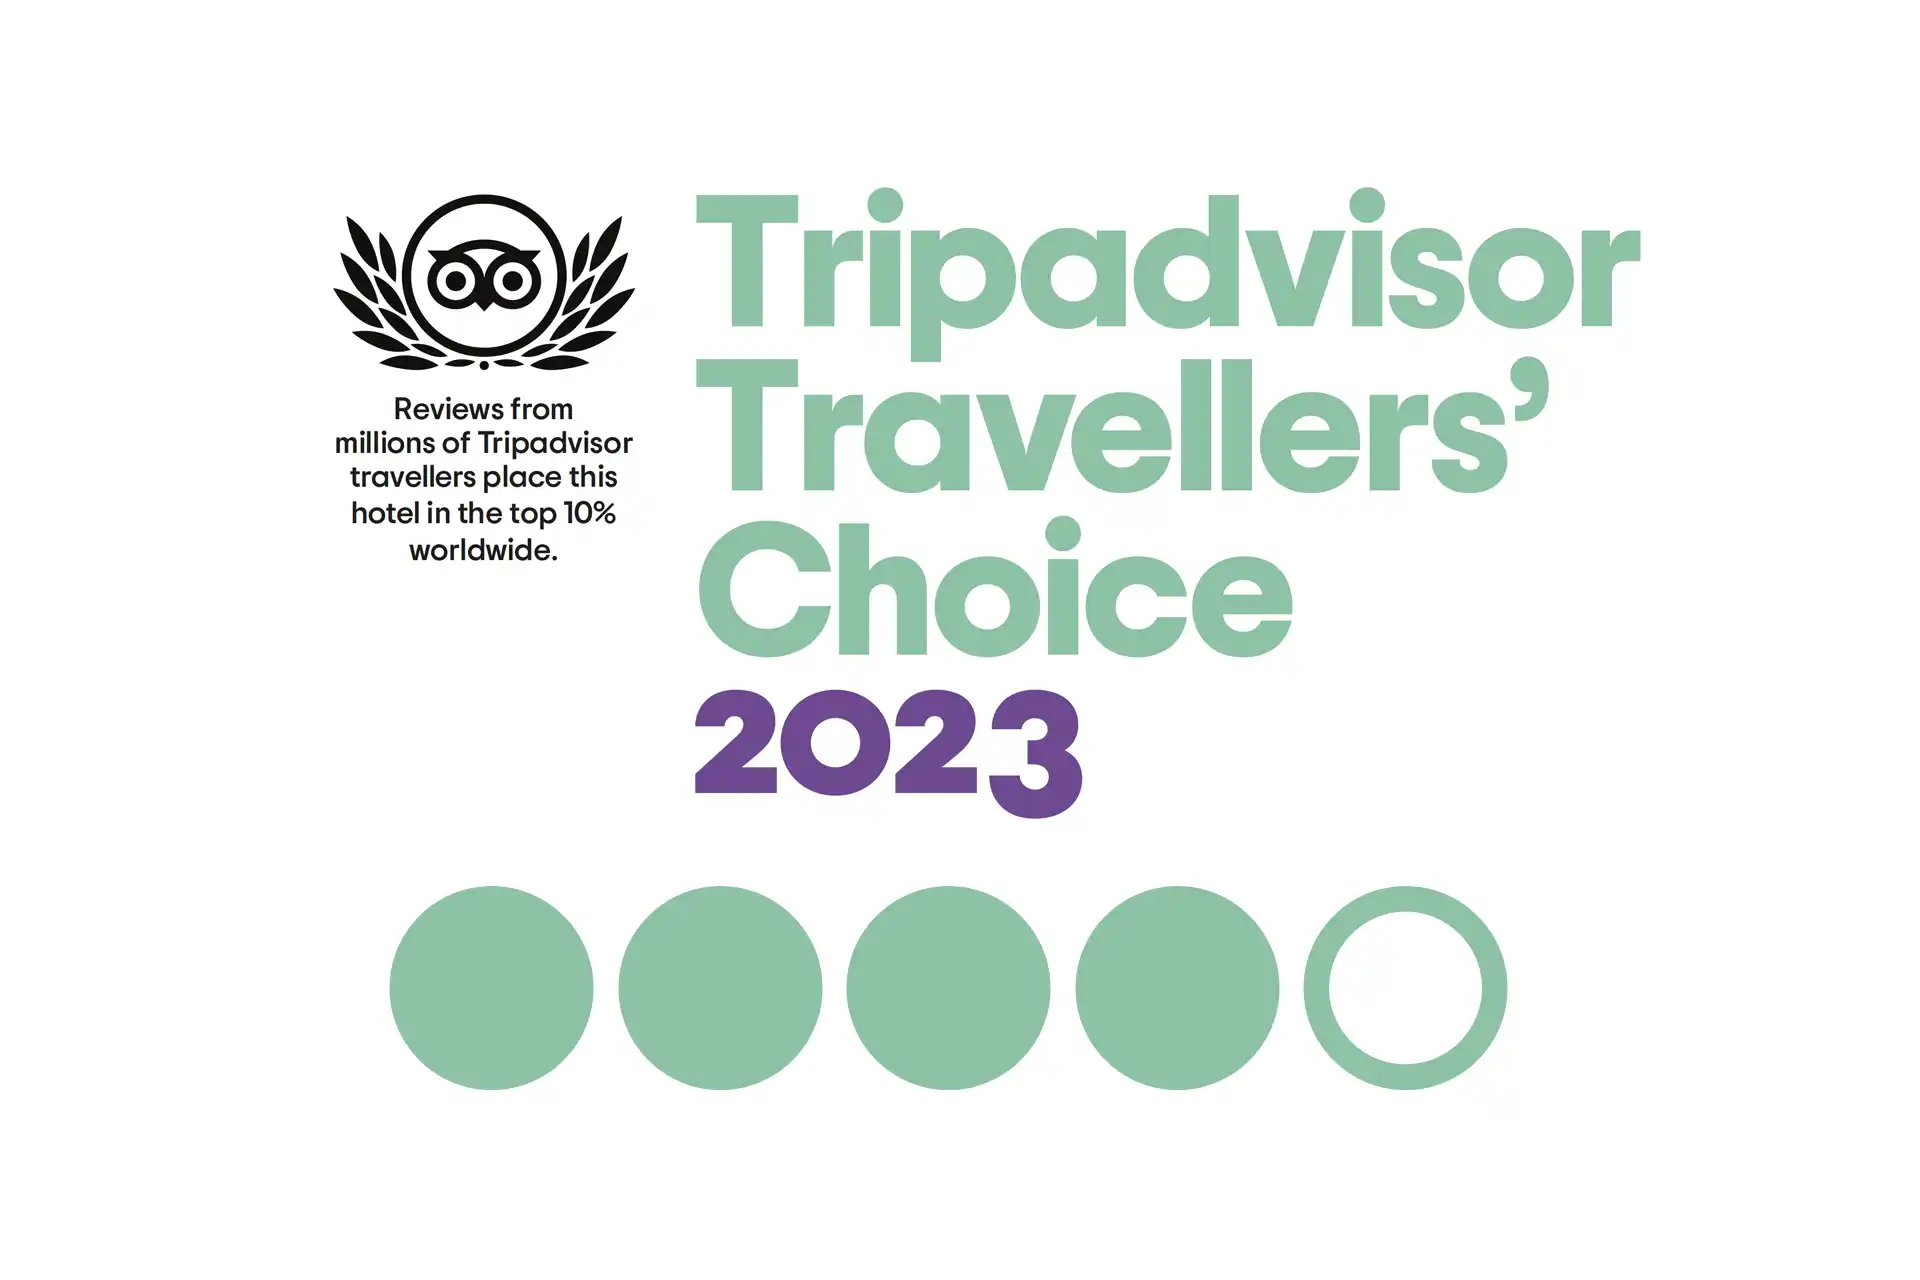 Tripadvisor Choice Awards 2023